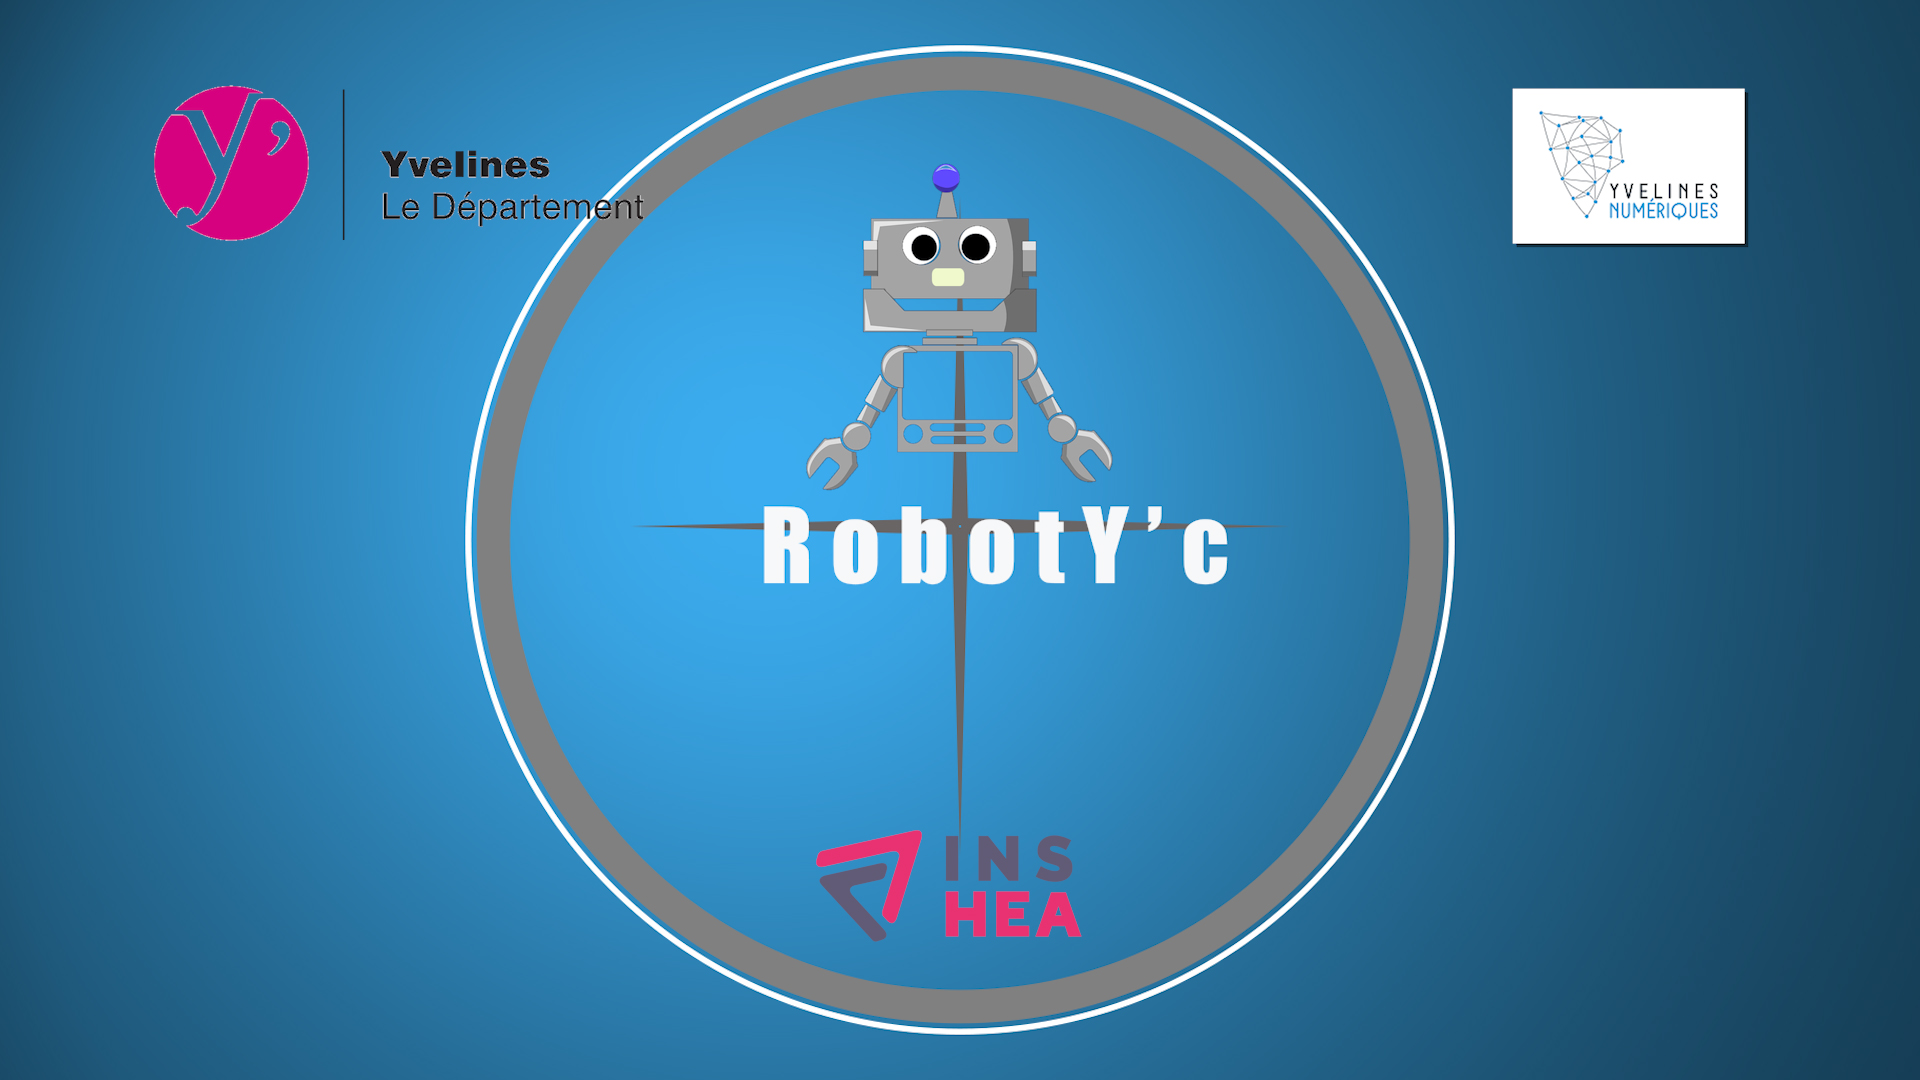 RobotY'c Épisode 1 "Le lancement du projet"